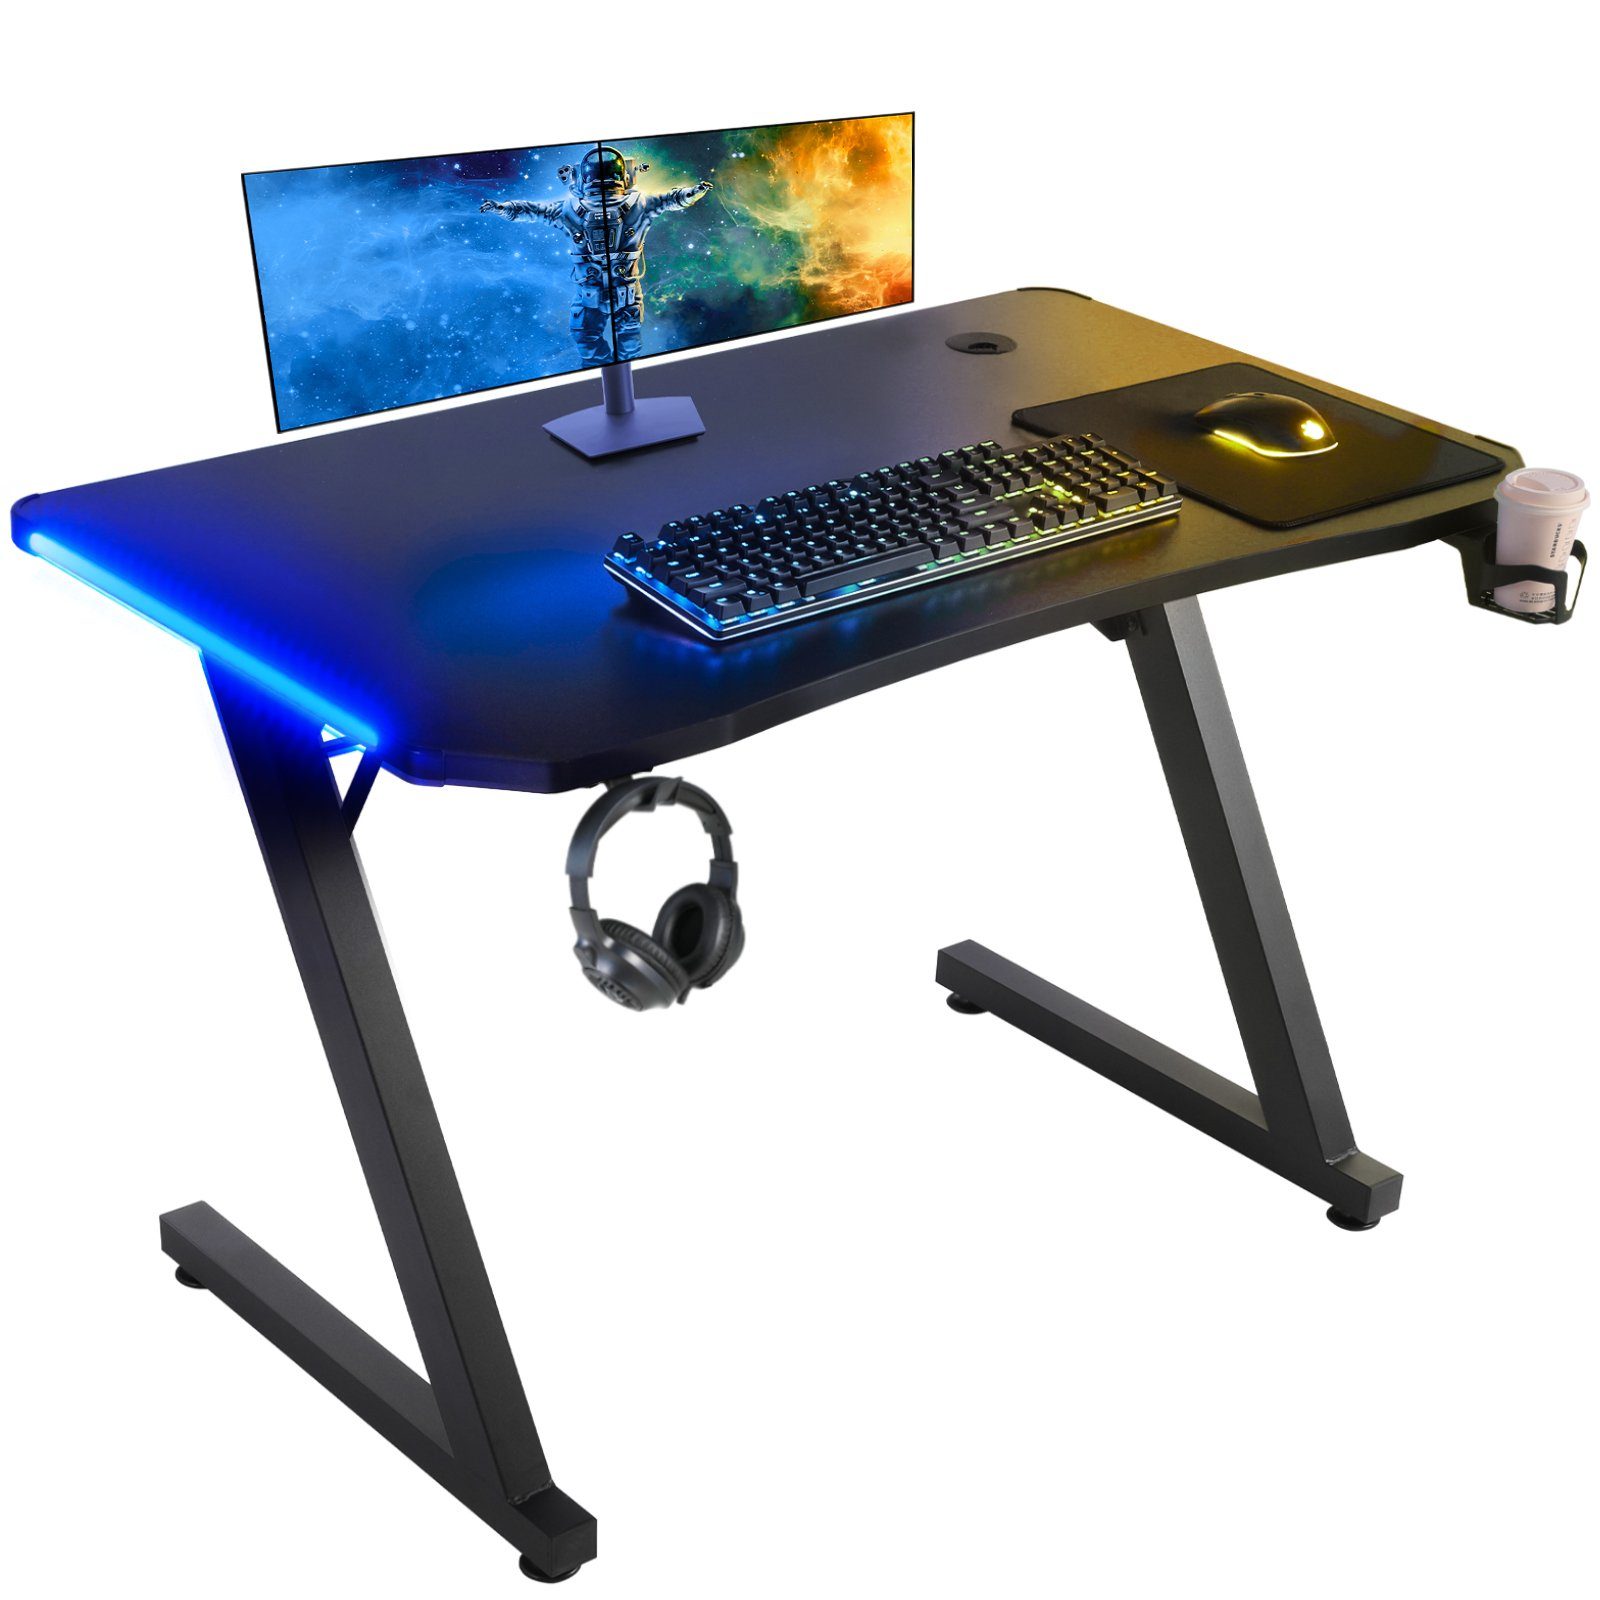 Femor Gamingtisch, Gaming Schreibtisch mit Fernbedienung100x60x75cm